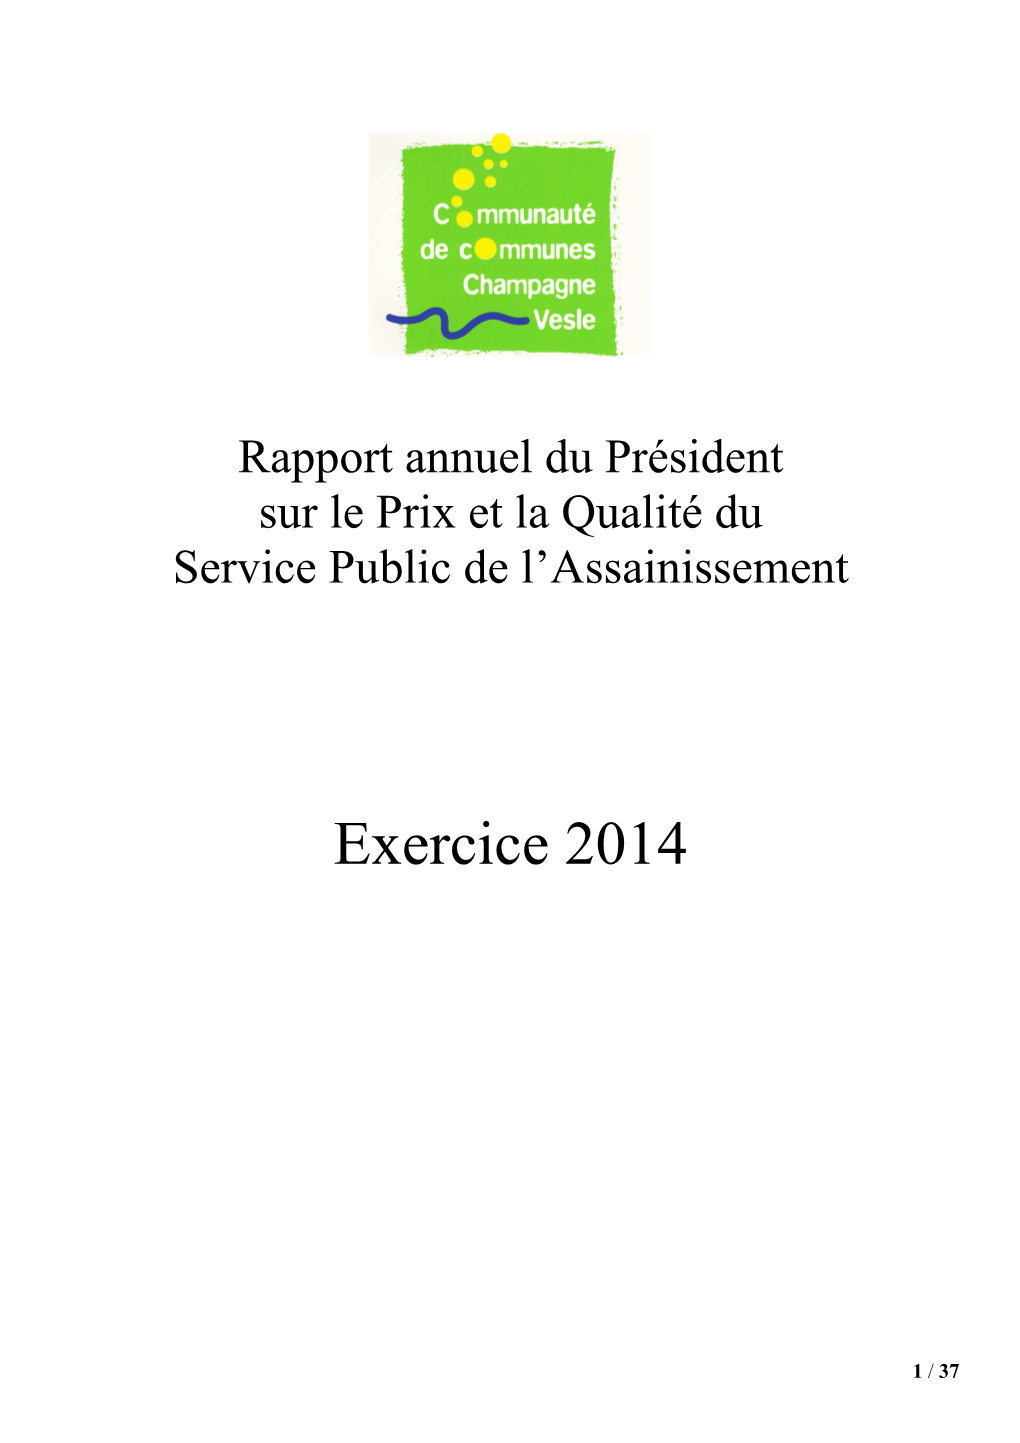 Rapport Du Président 2014